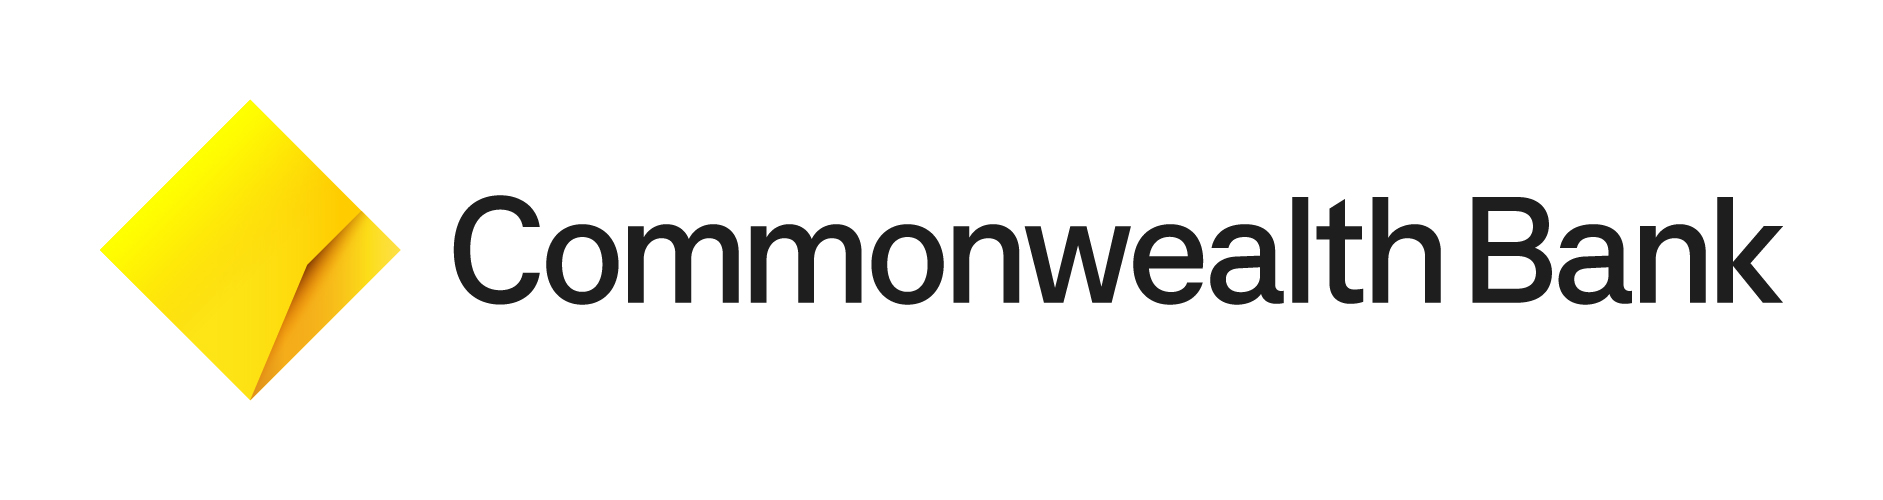 Commonwealth Bank horizontal logo